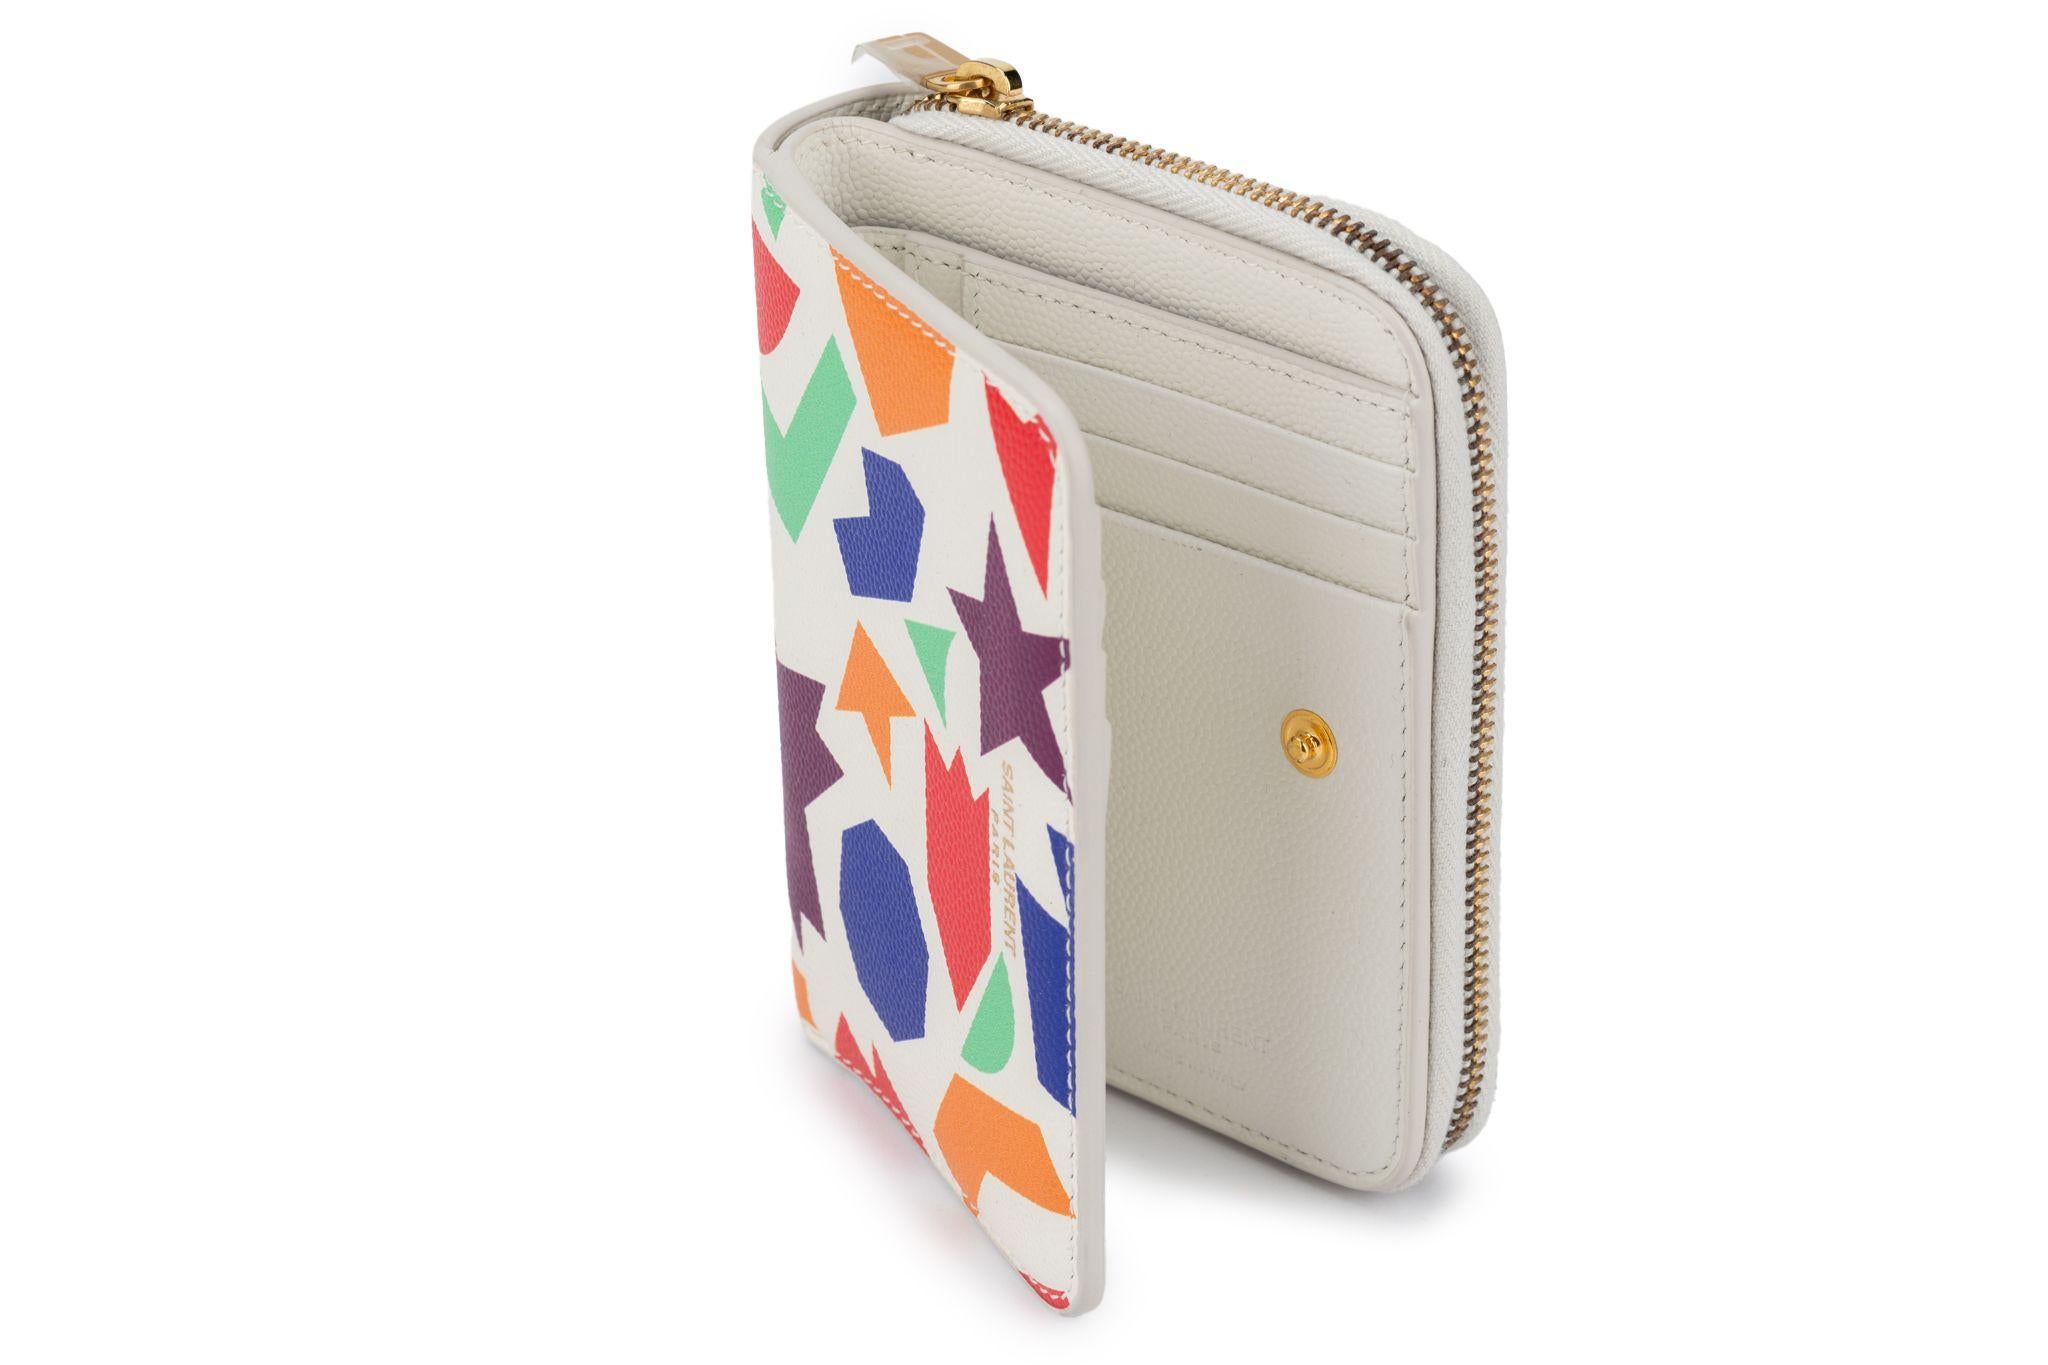 YSL neue Brieftasche aus genarbtem Leder mit Reißverschluss und mehrfarbigem geometrischem Muster. Bifold, mit Kreditkartenfächern und Münzfach mit Reißverschluss.
Kommt mit Booklet, Original-Schutzumschlag und Box.